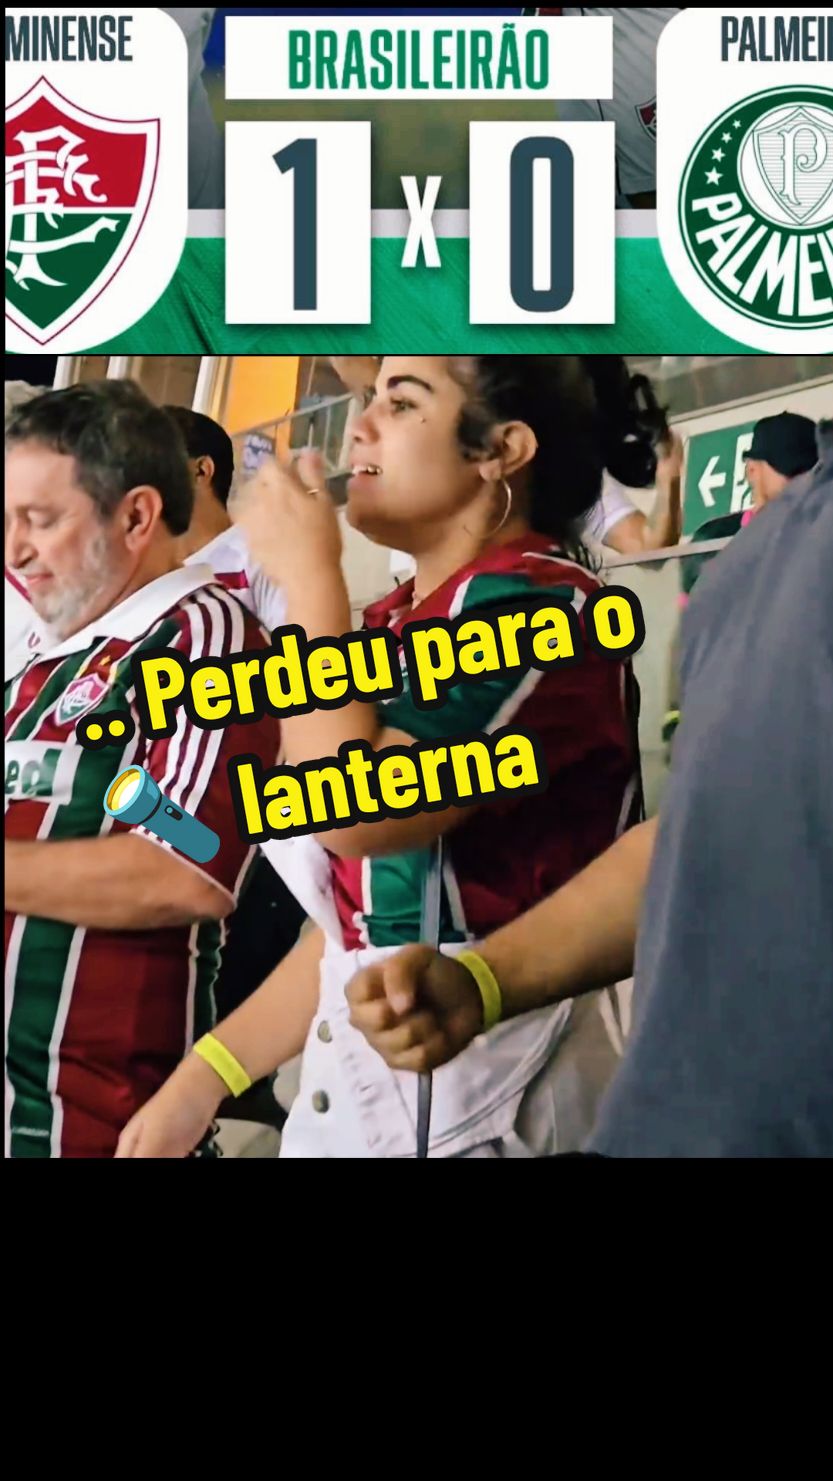 Palmeiras não venceu o lanterna do campeonato. #brasileirao #flypシ #verdaominhapaixao #palmeirasoficial #verdao #fluminense #flu #corinthians #saopaulo #flamengo #maracanã 